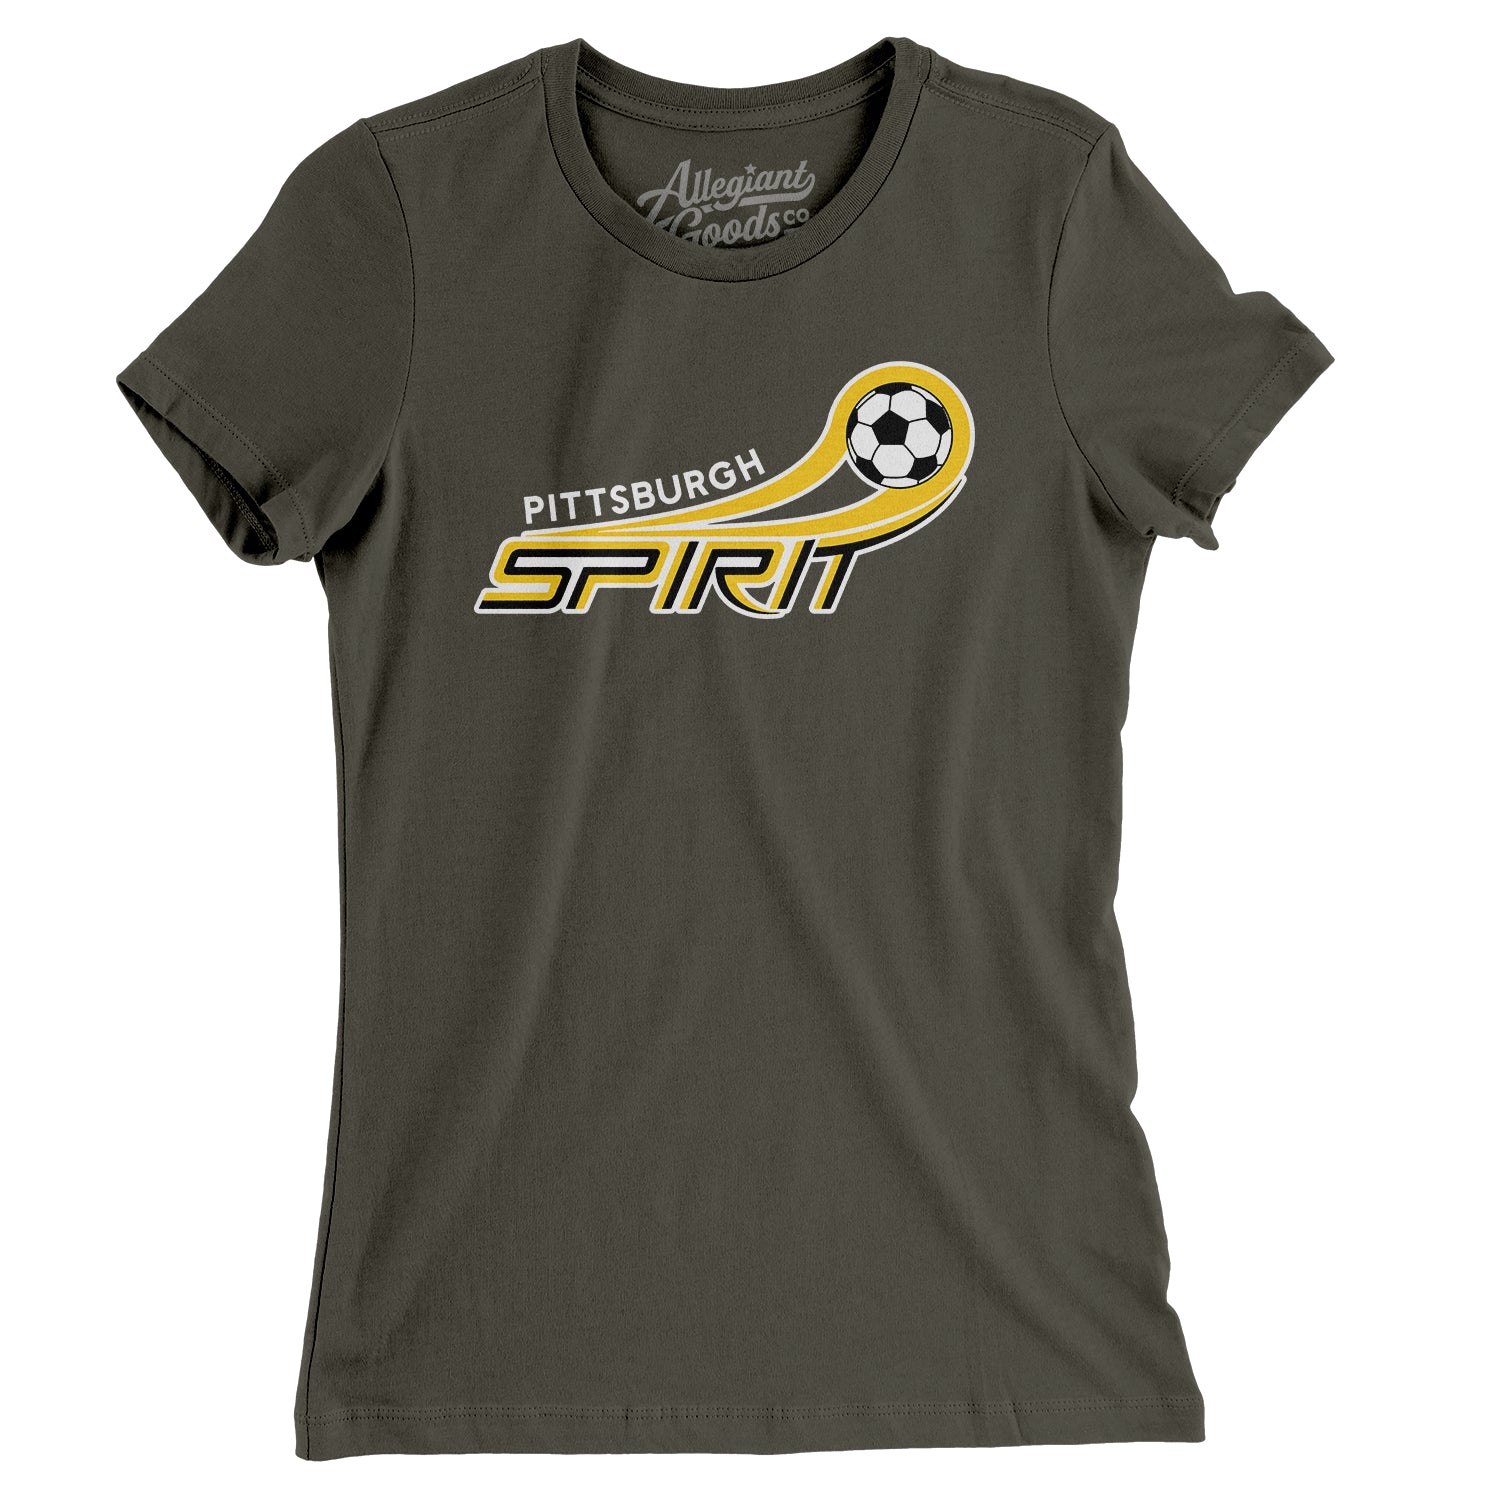 Pittsburgh Spirit Soccer Women's T-Shirt - Allegiant Goods Co.